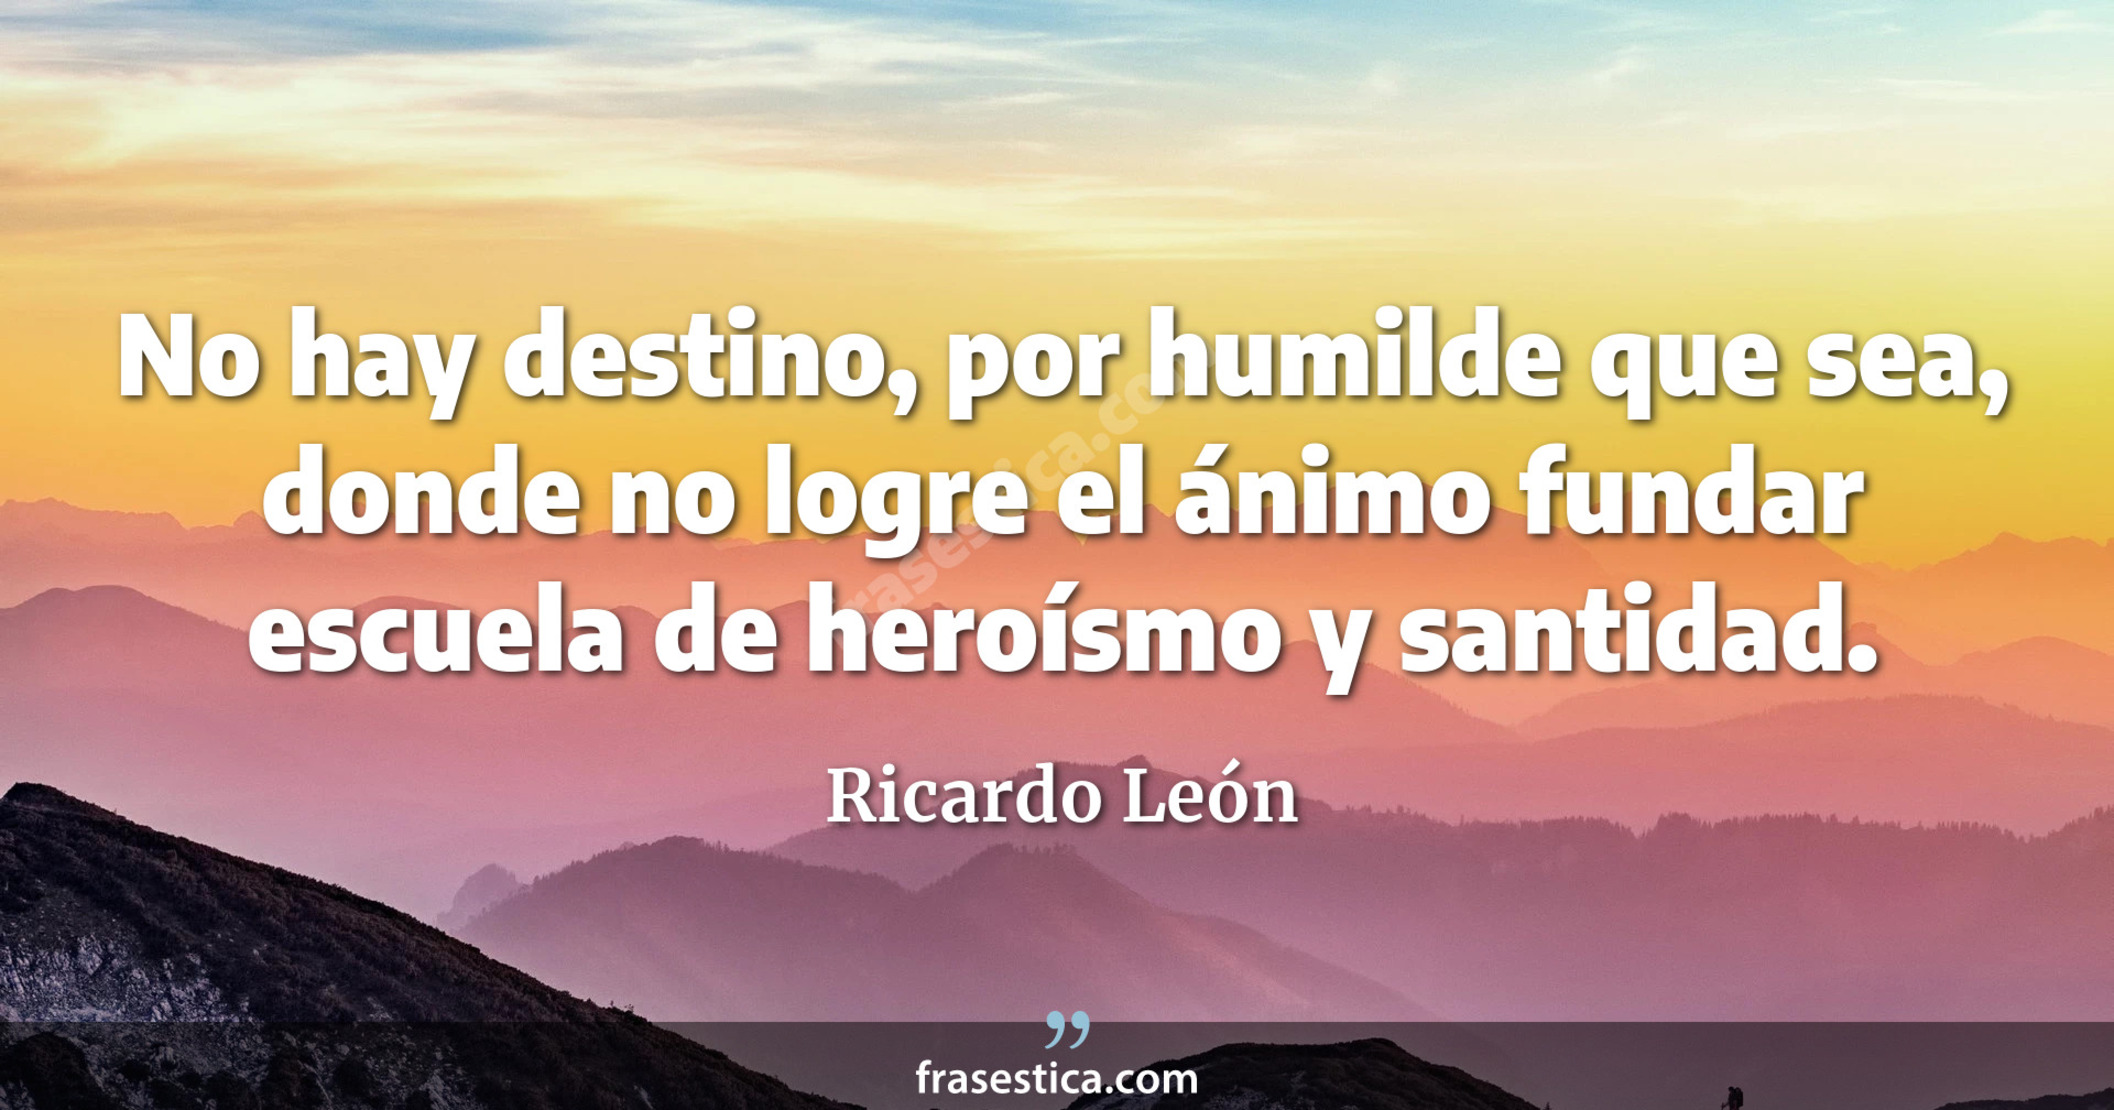 No hay destino, por humilde que sea, donde no logre el ánimo fundar escuela de heroísmo y santidad. - Ricardo León